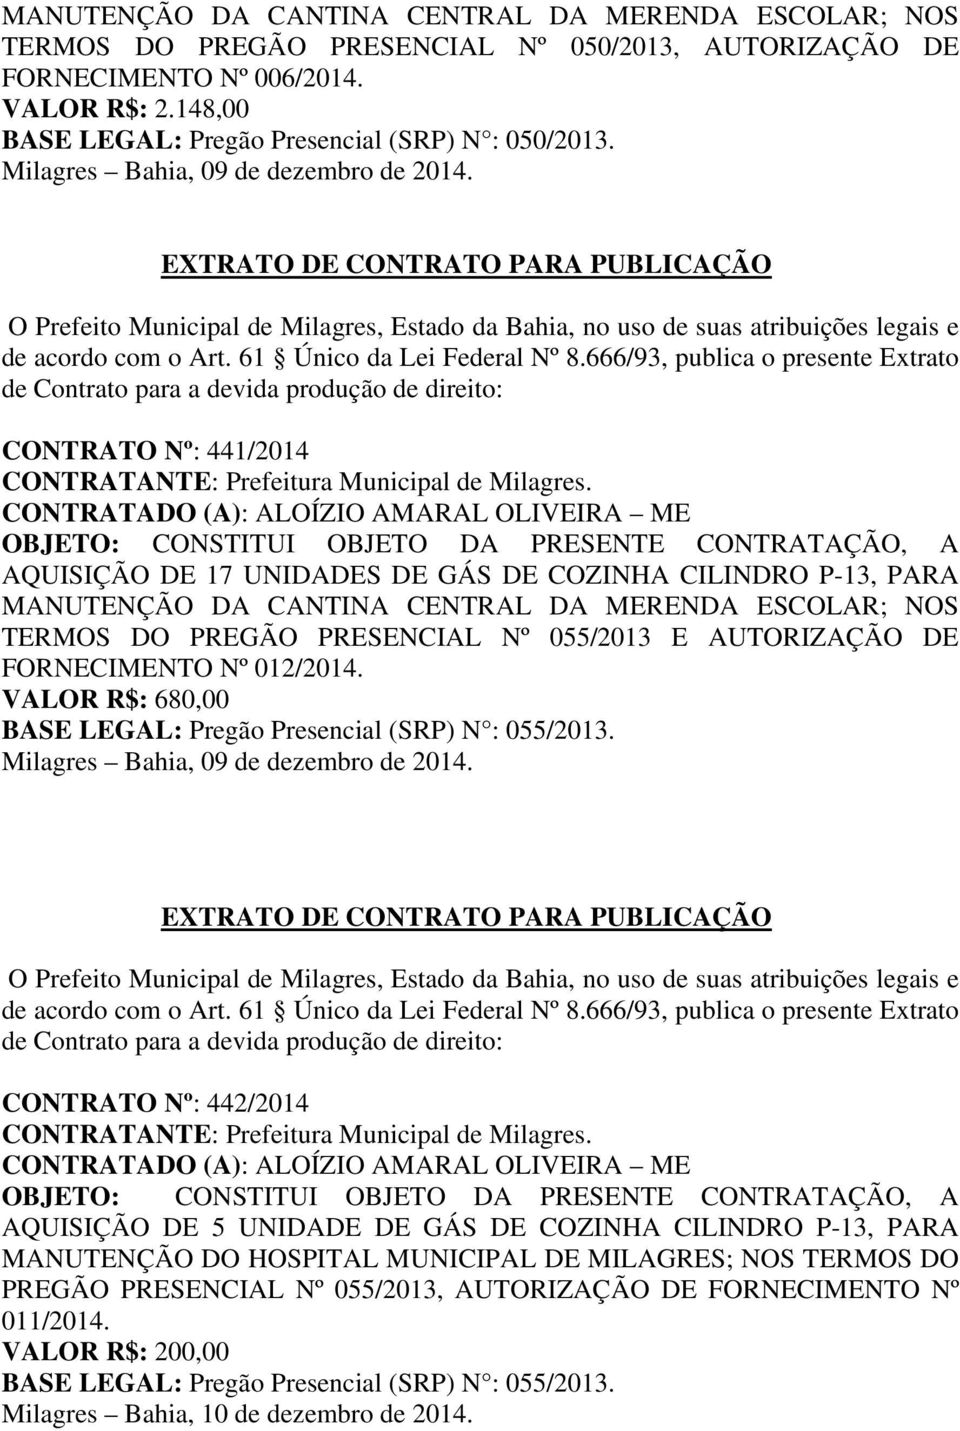 CONTRATO Nº: 441/2014 CONTRATADO (A): ALOÍZIO AMARAL OLIVEIRA ME AQUISIÇÃO DE 17 UNIDADES DE GÁS DE COZINHA CILINDRO P-13, PARA MANUTENÇÃO DA CANTINA CENTRAL DA MERENDA ESCOLAR; NOS TERMOS DO PREGÃO